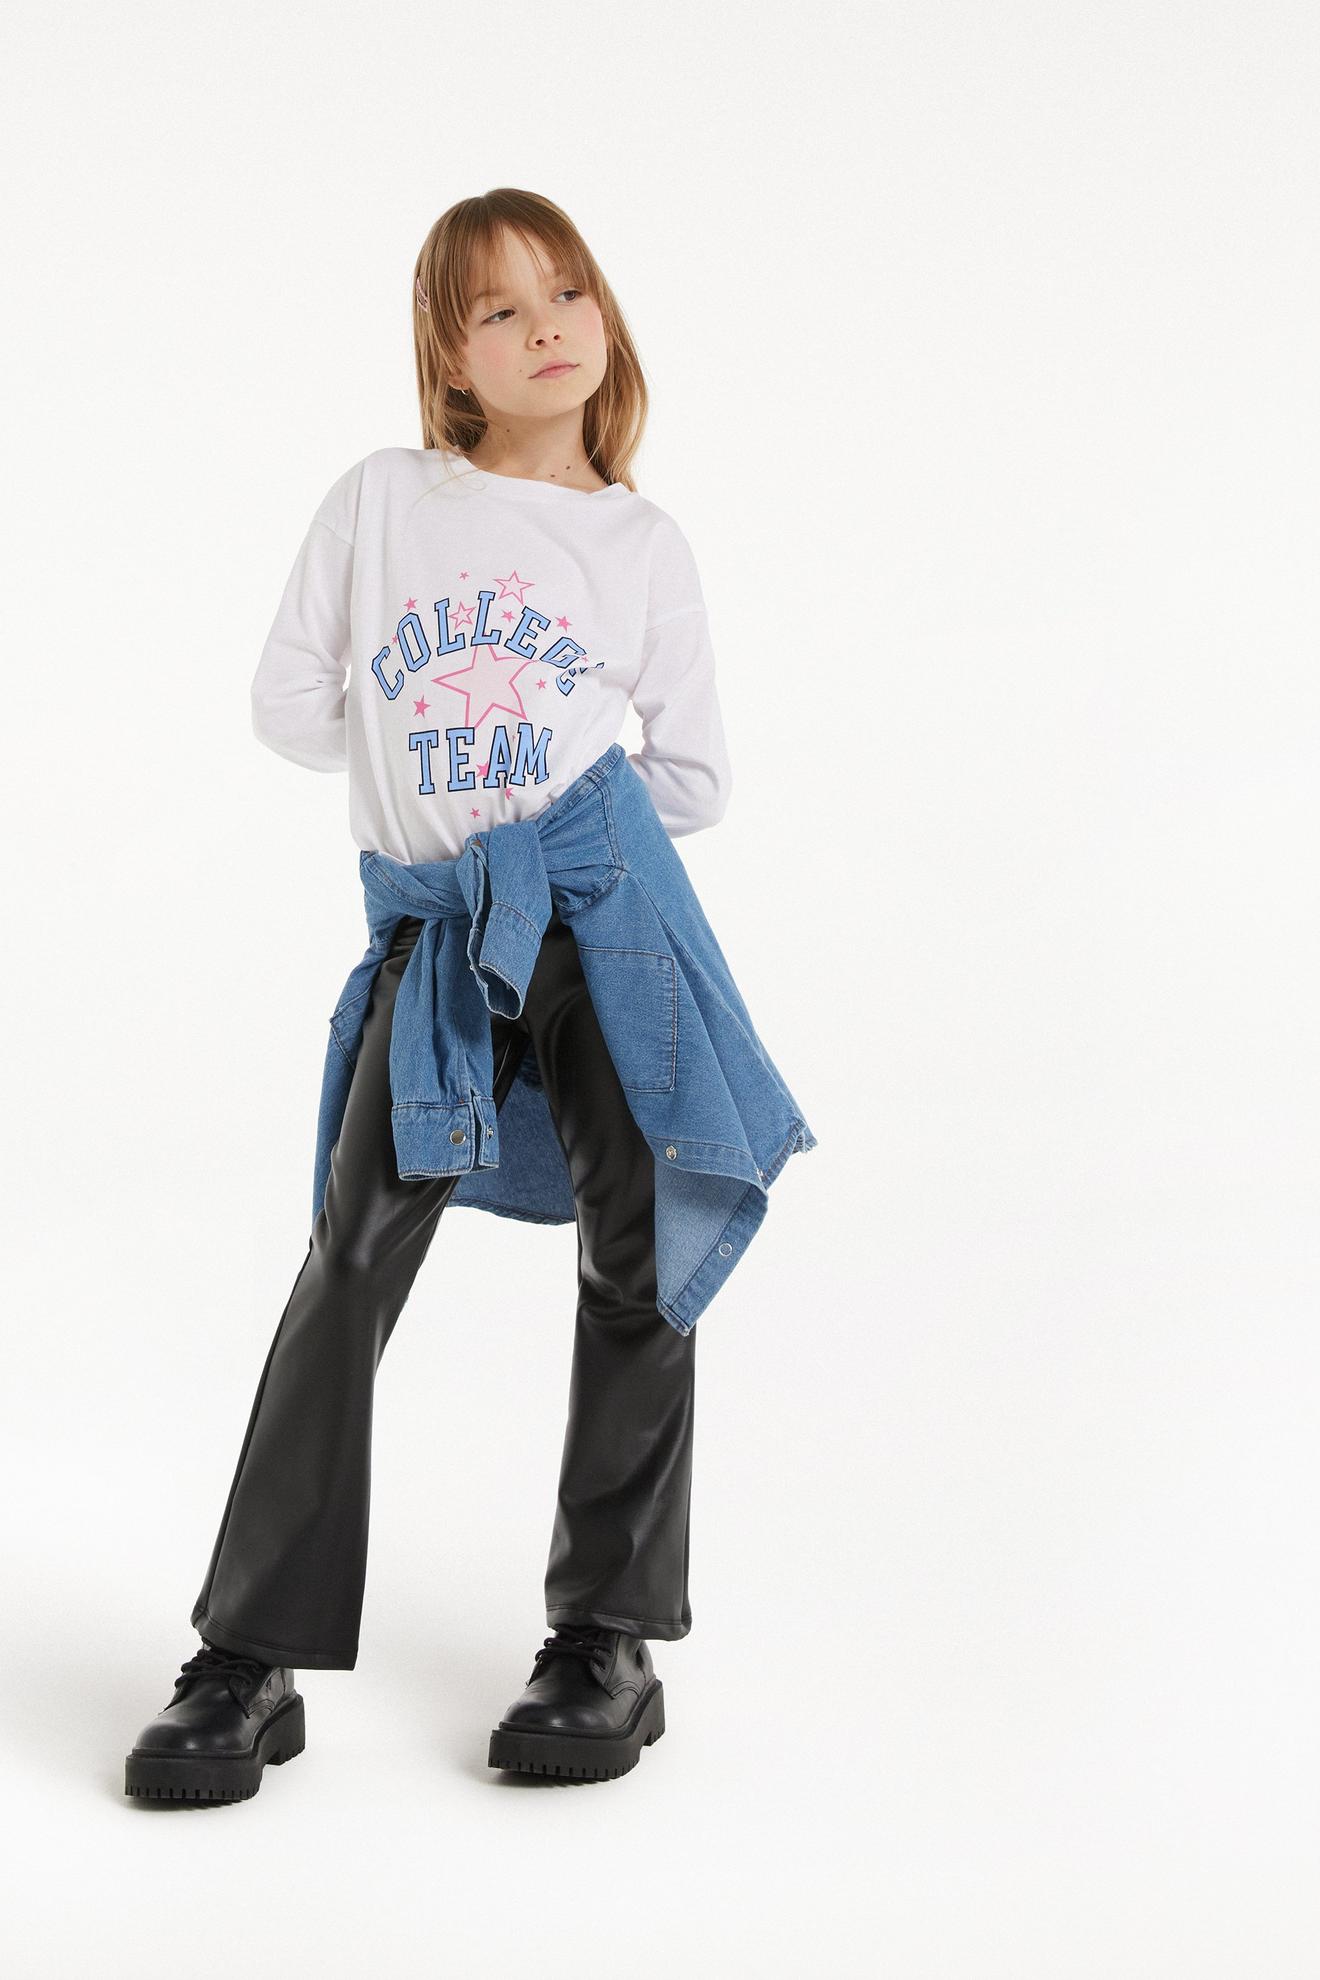 Dievčenské Tričko s Dlhým Rukávom z Bavlny s Potlačou v akcii za 7,99€ v Tezenis